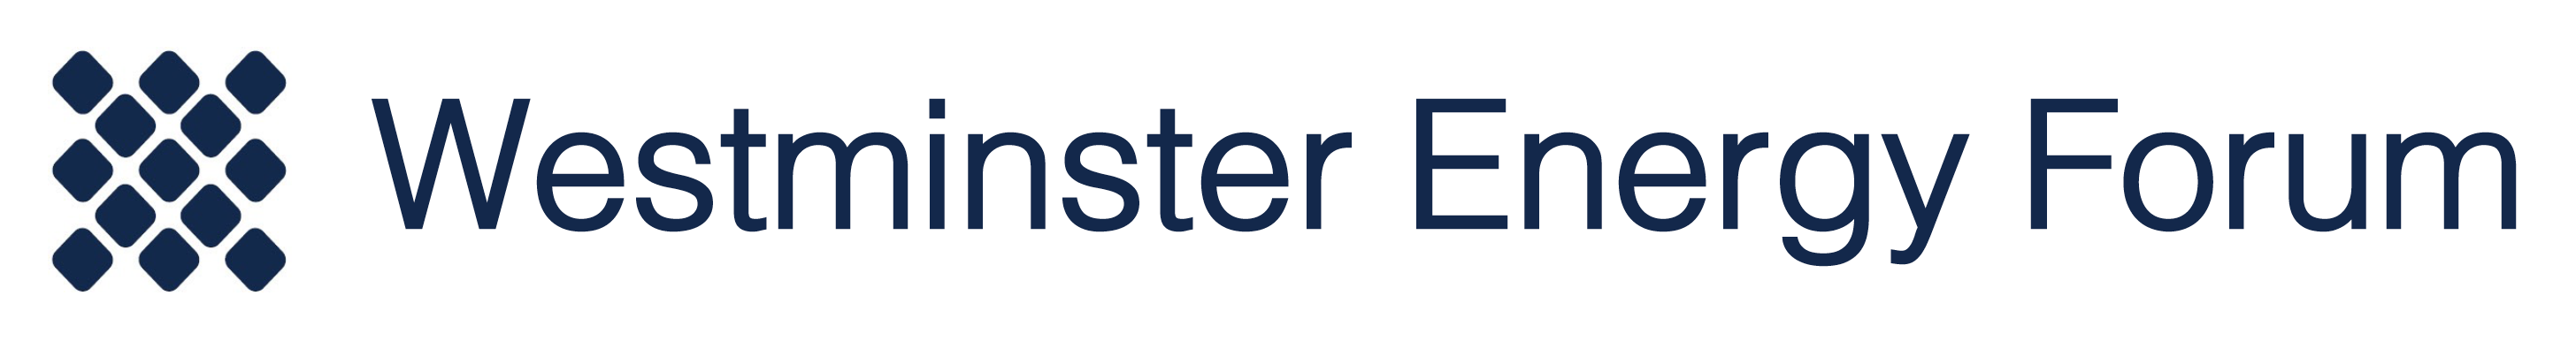 Westminster Energy Forum Logo